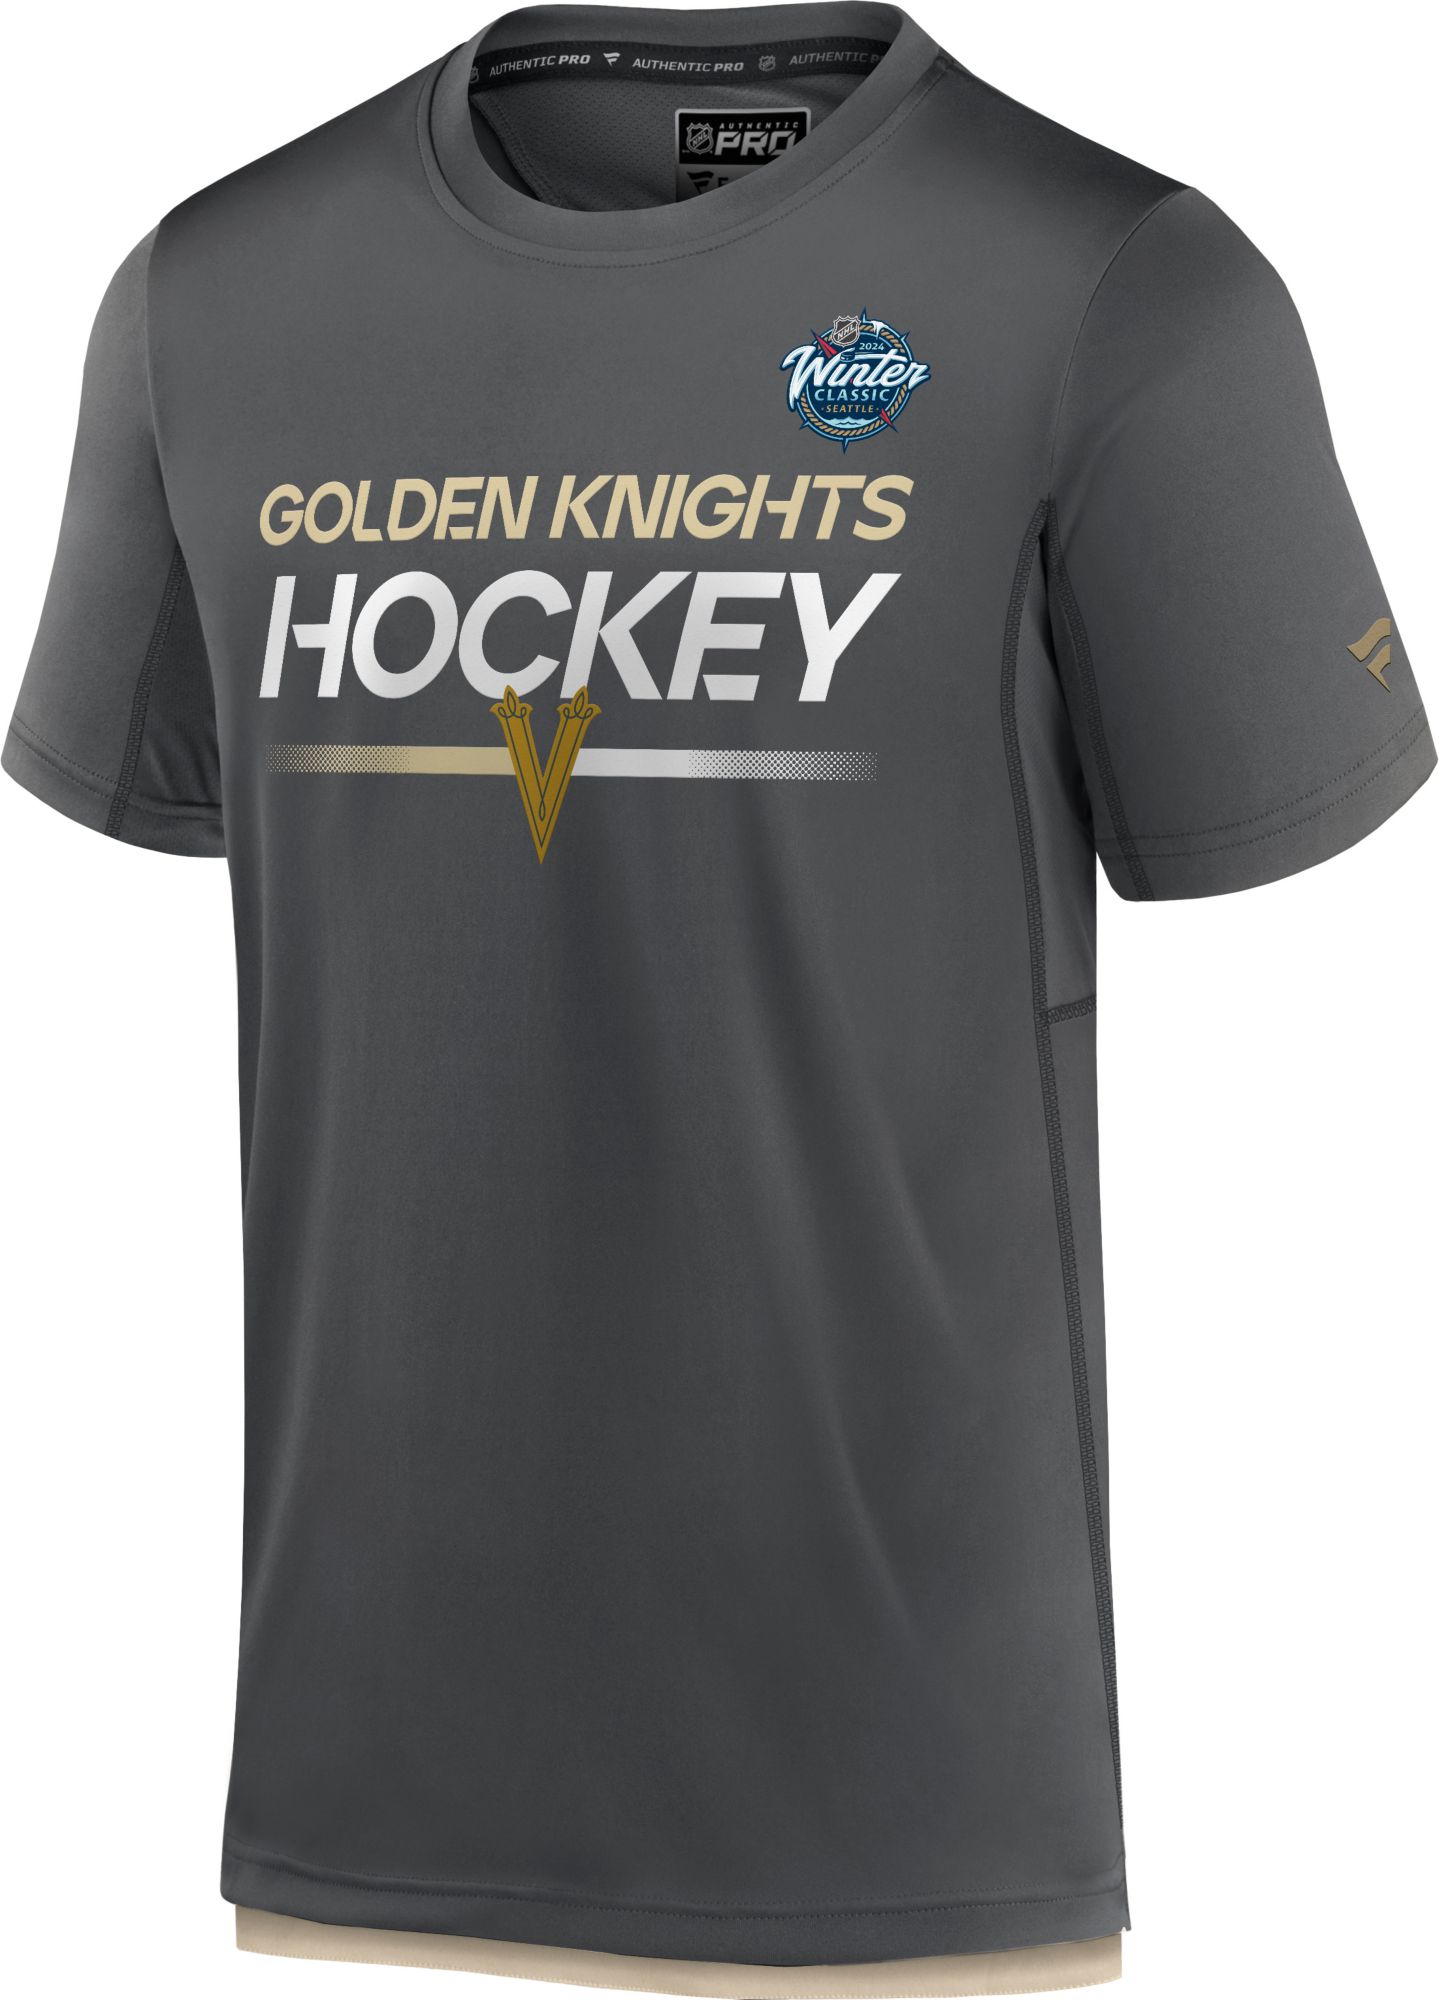 las vegas golden knights hockey jersey